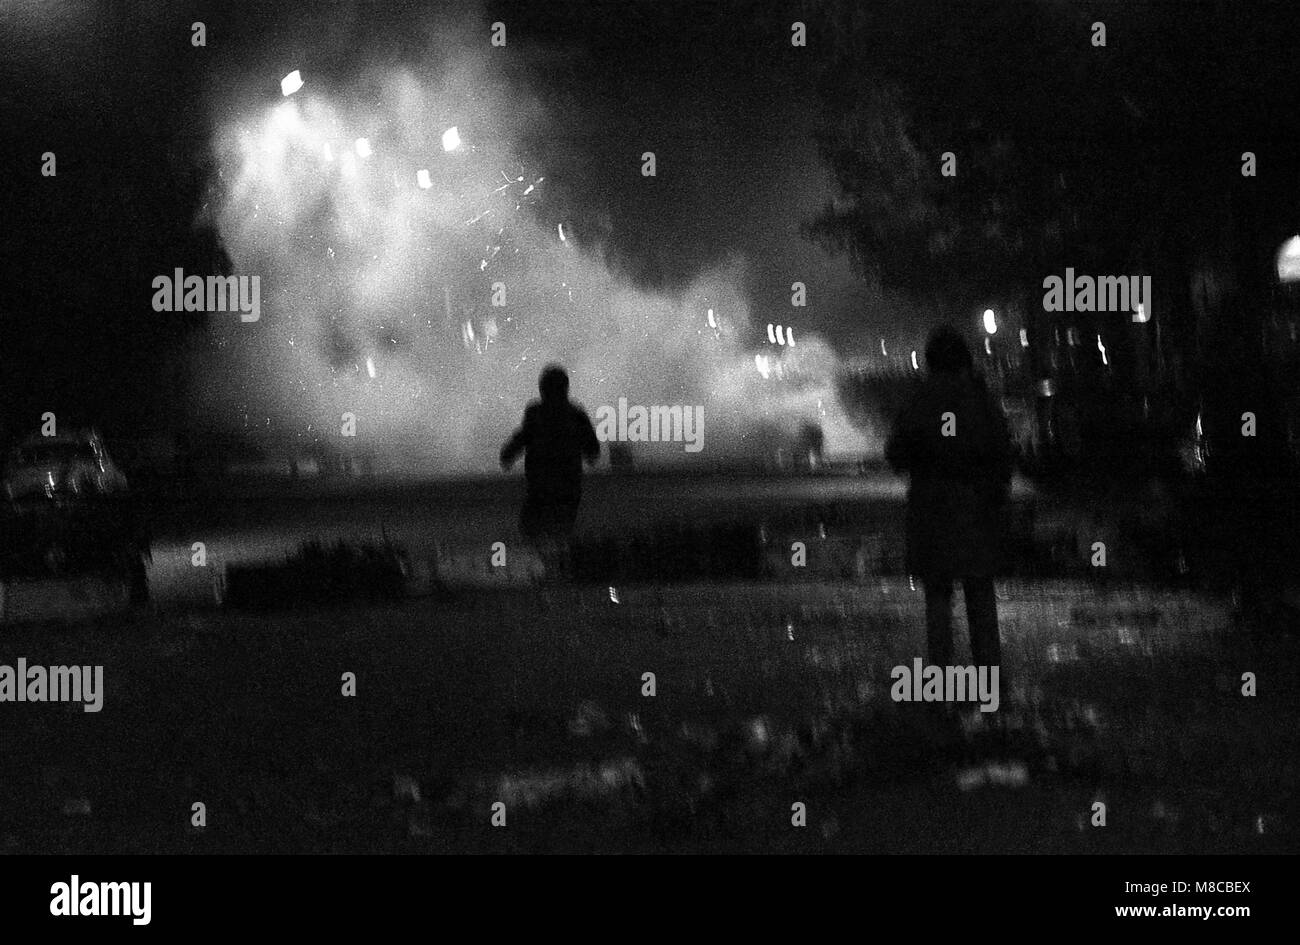 Philippe Gras / Le Pictorium - Mai 1968 - 1968 - France / Ile-de-France (région) / Paris - affrontements entre policiers et manifestants dans la nuit Banque D'Images